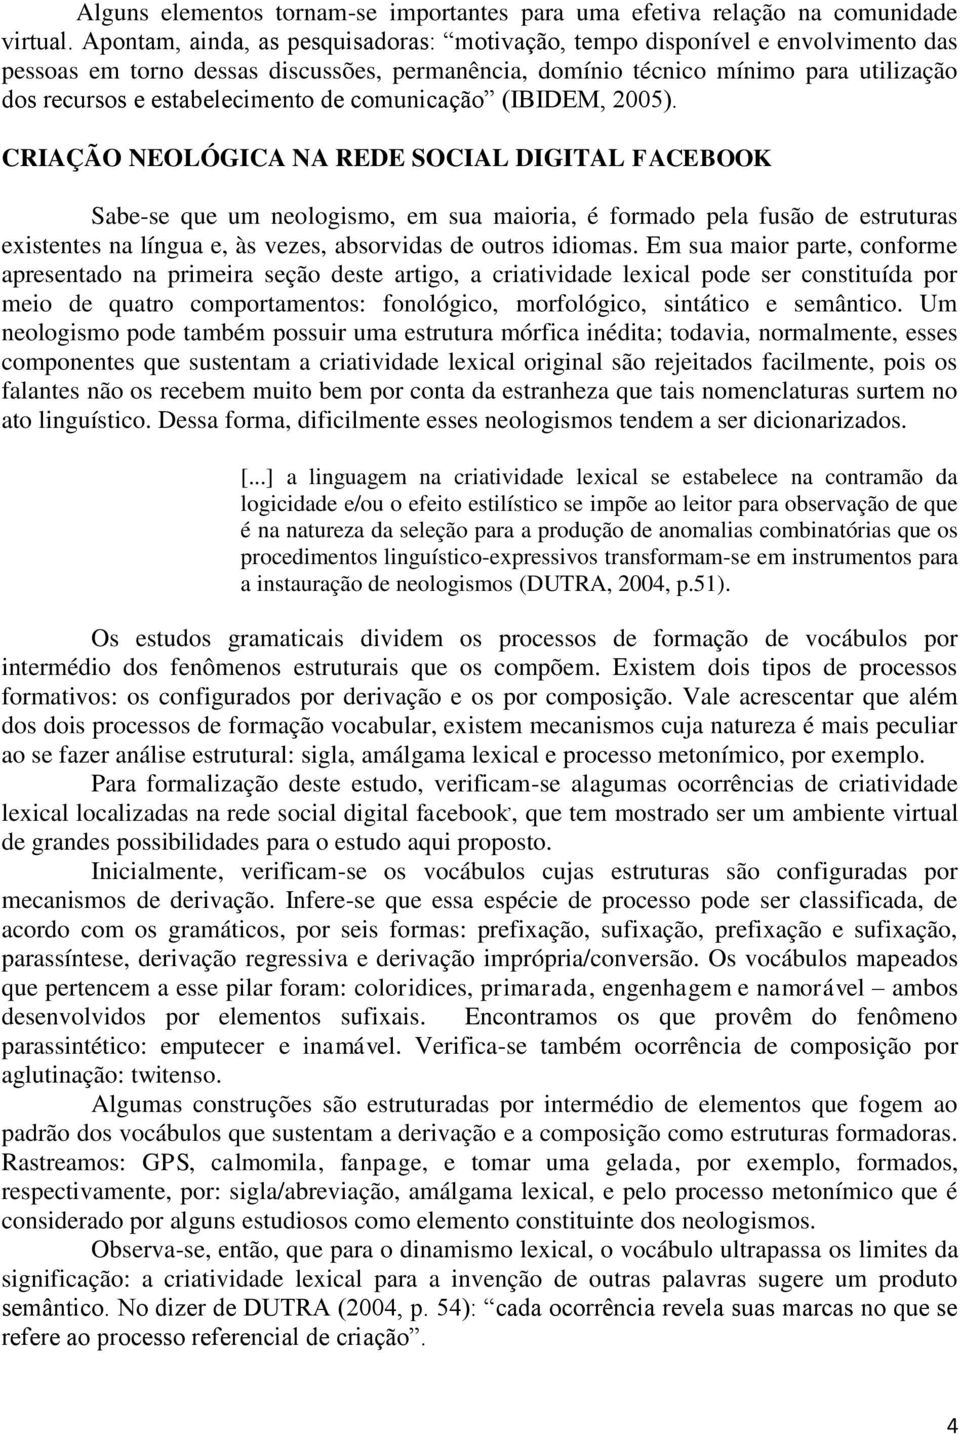 de comunicação (IBIDEM, 2005).